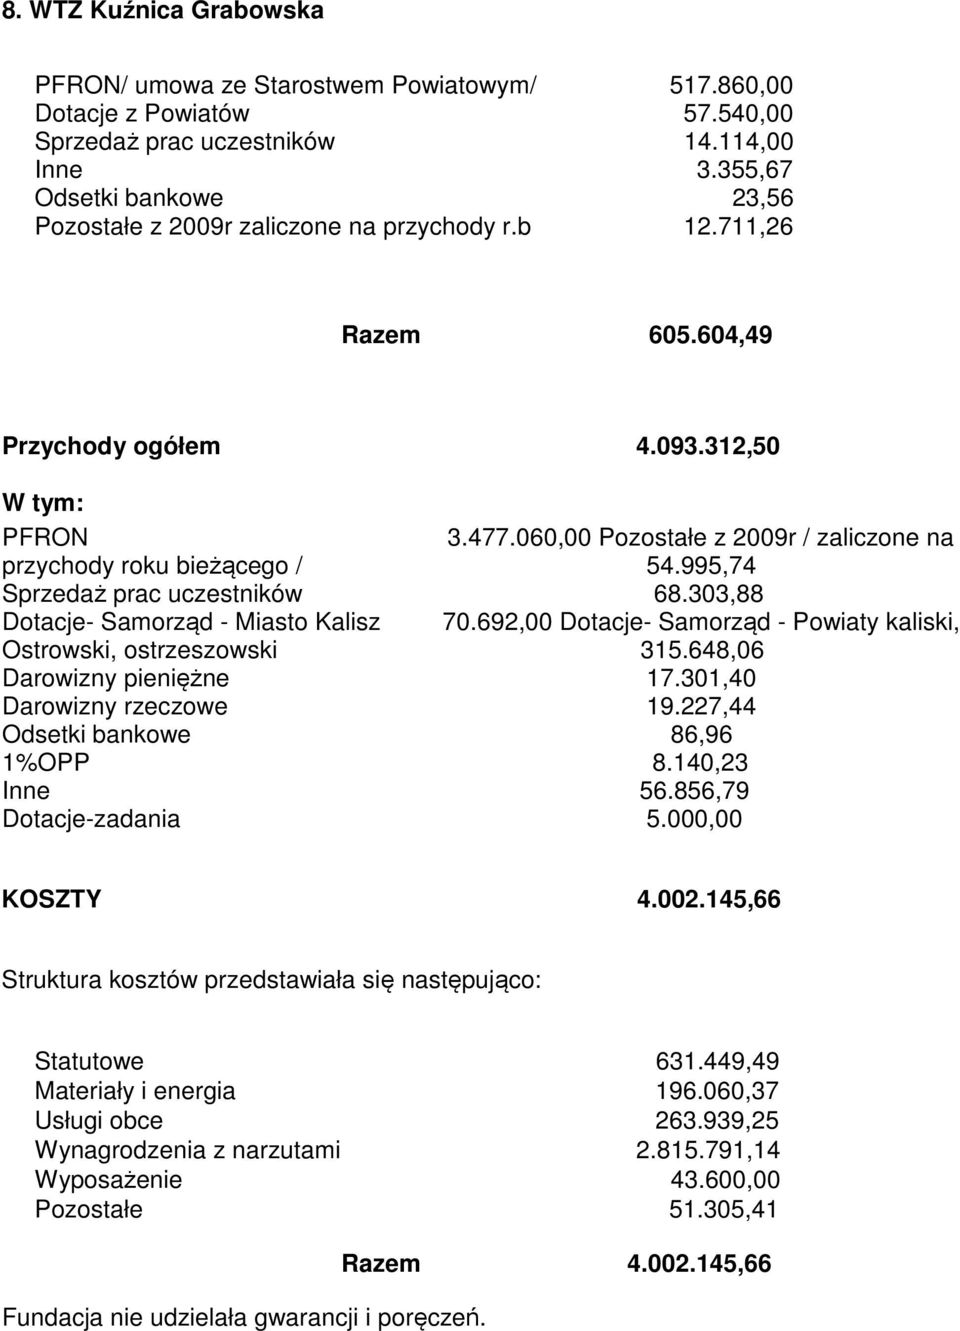 060,00 Pozostałe z 2009r / zaliczone na przychody roku bieżącego / 54.995,74 Sprzedaż prac uczestników 68.303,88 Dotacje- Samorząd - Miasto Kalisz 70.